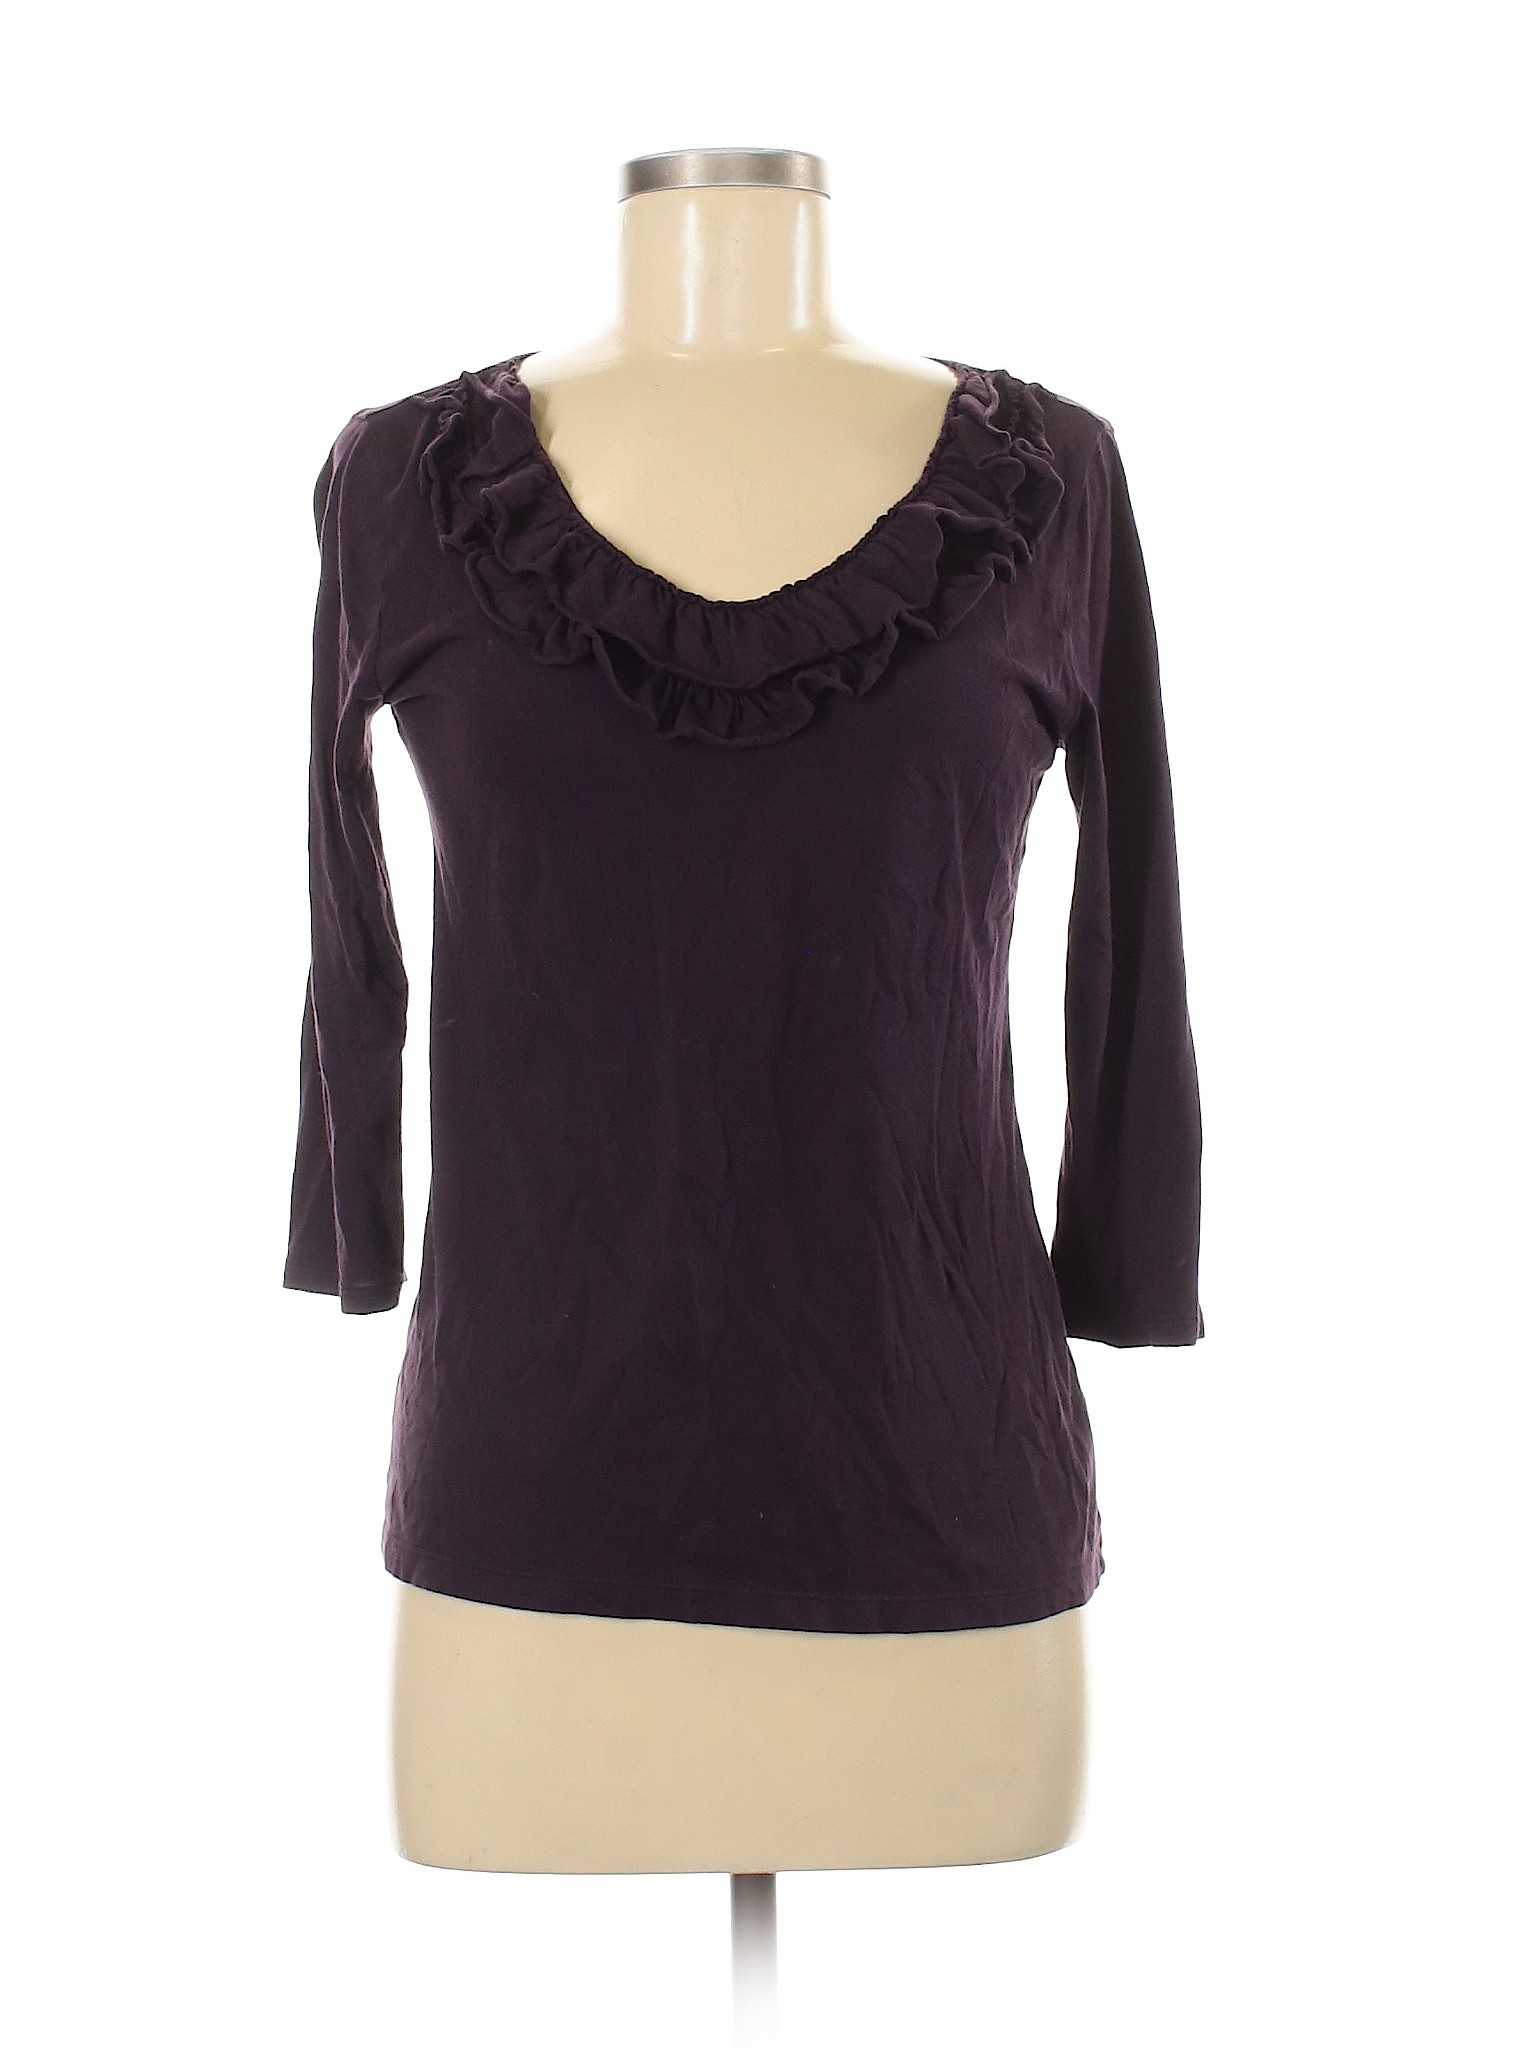 Ann Taylor Factory Women Purple 3/4 Sleeve Top M | eBay